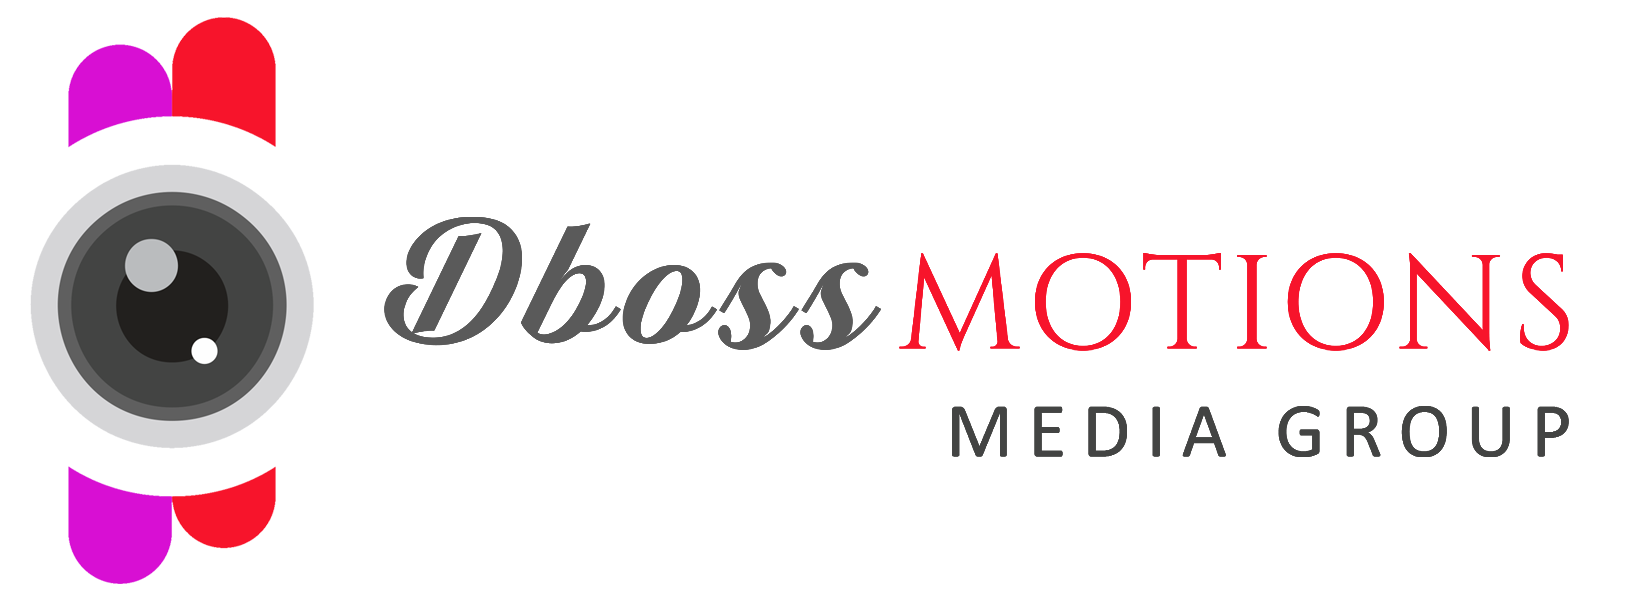 dboss-logo.png